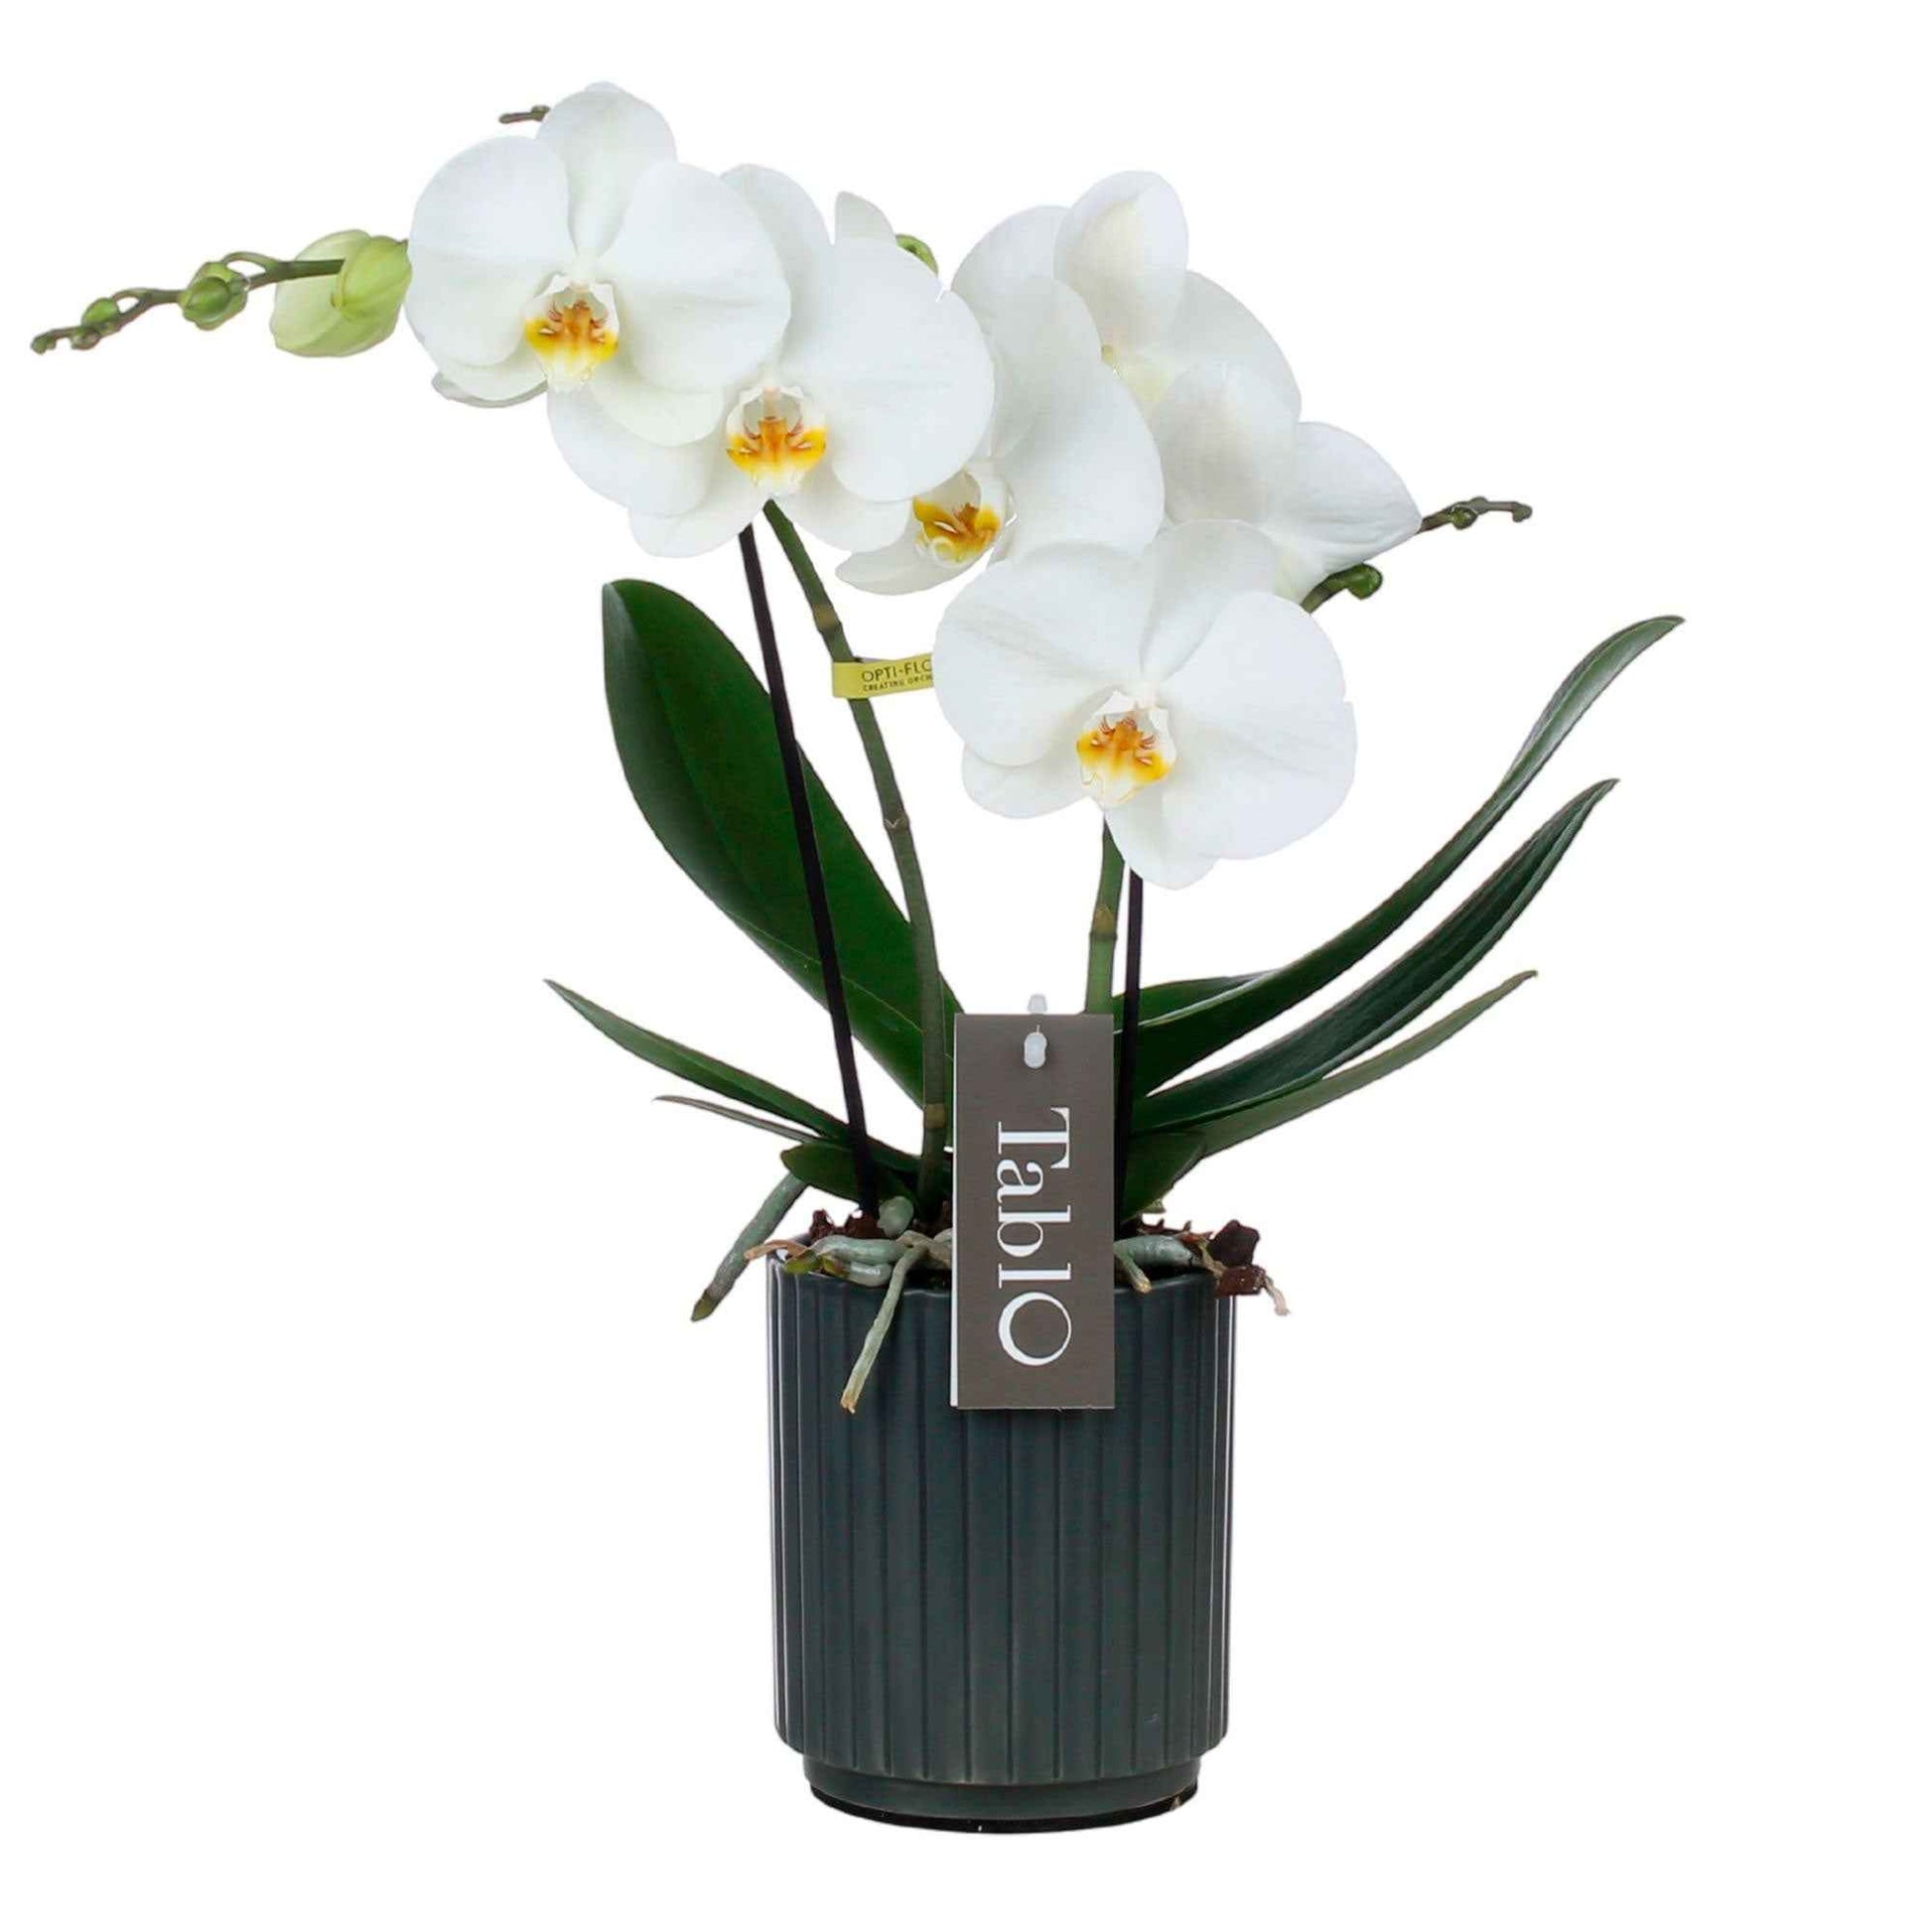 Vlinderorchidee Phalaenopsis 'Tablo Champagne' Wit incl. sierpot - Diervriendelijke kamerplanten